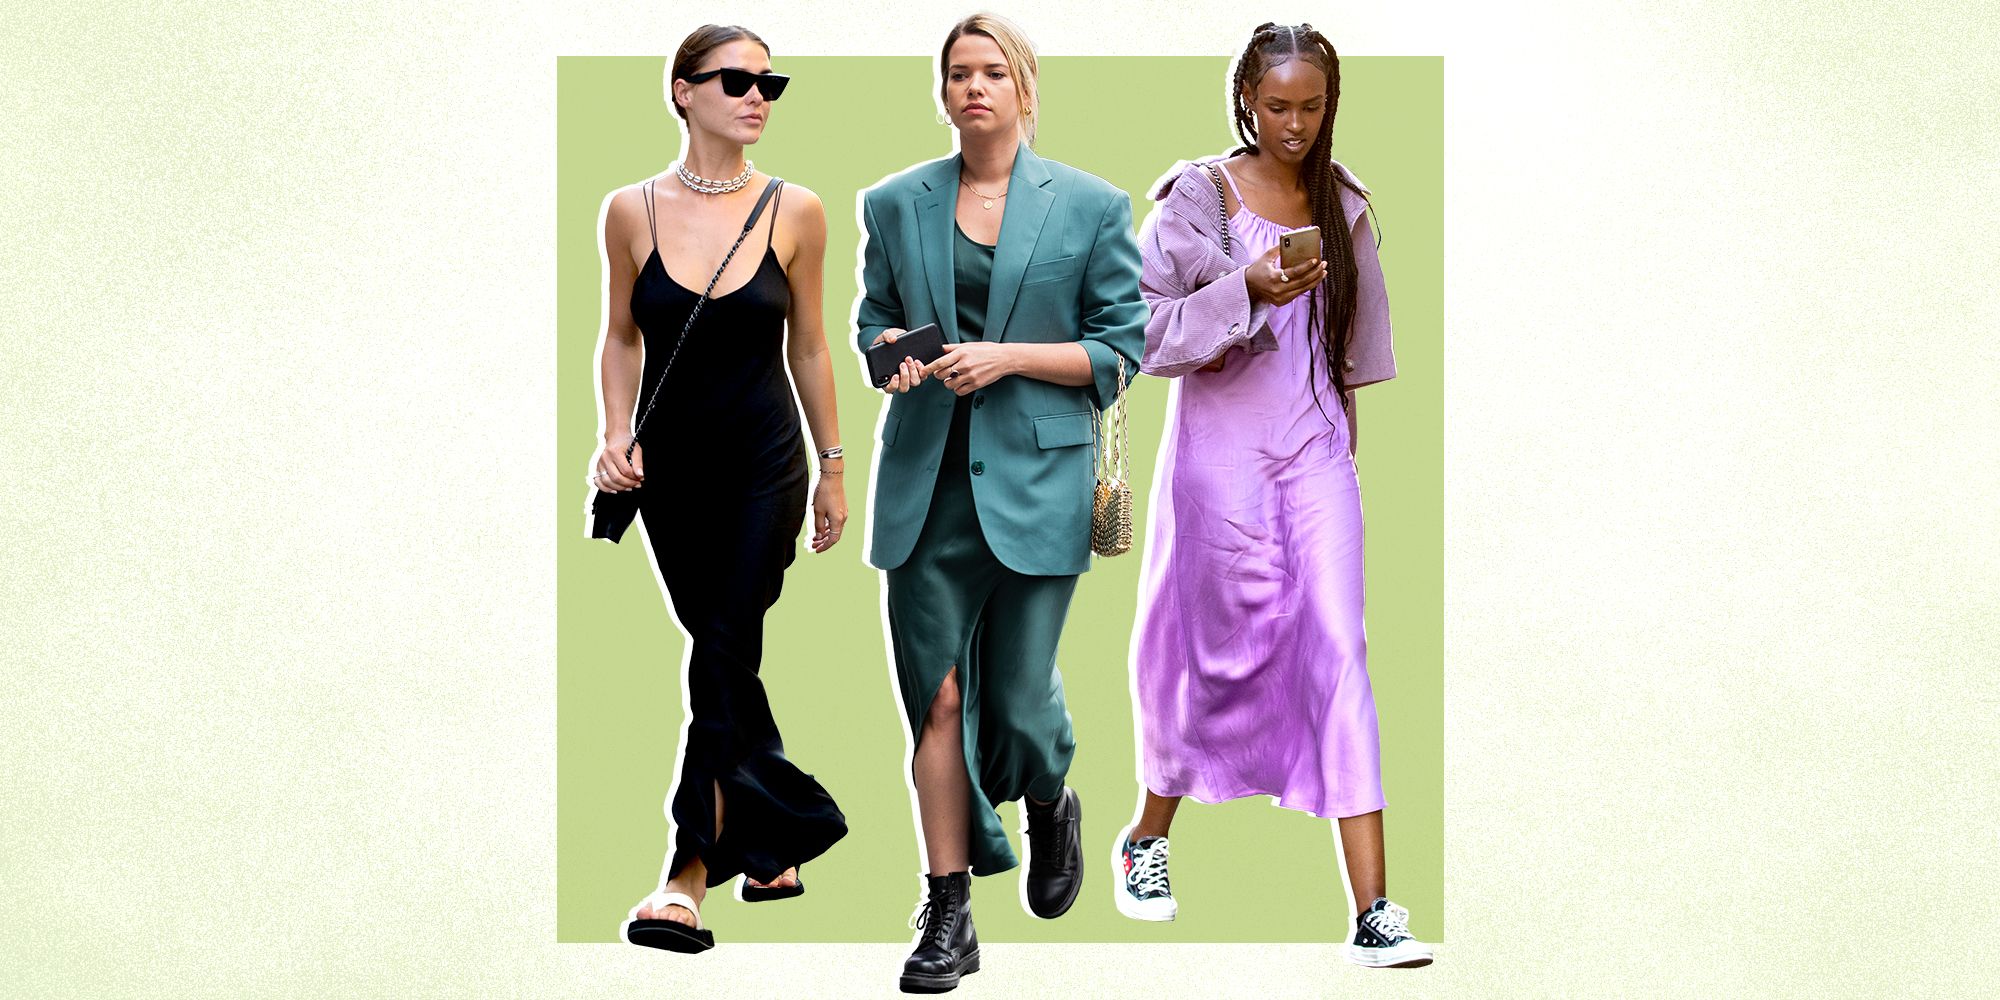 6 Stylish Slip Dress Outfits - Best Ways to Wear a Slip Dress